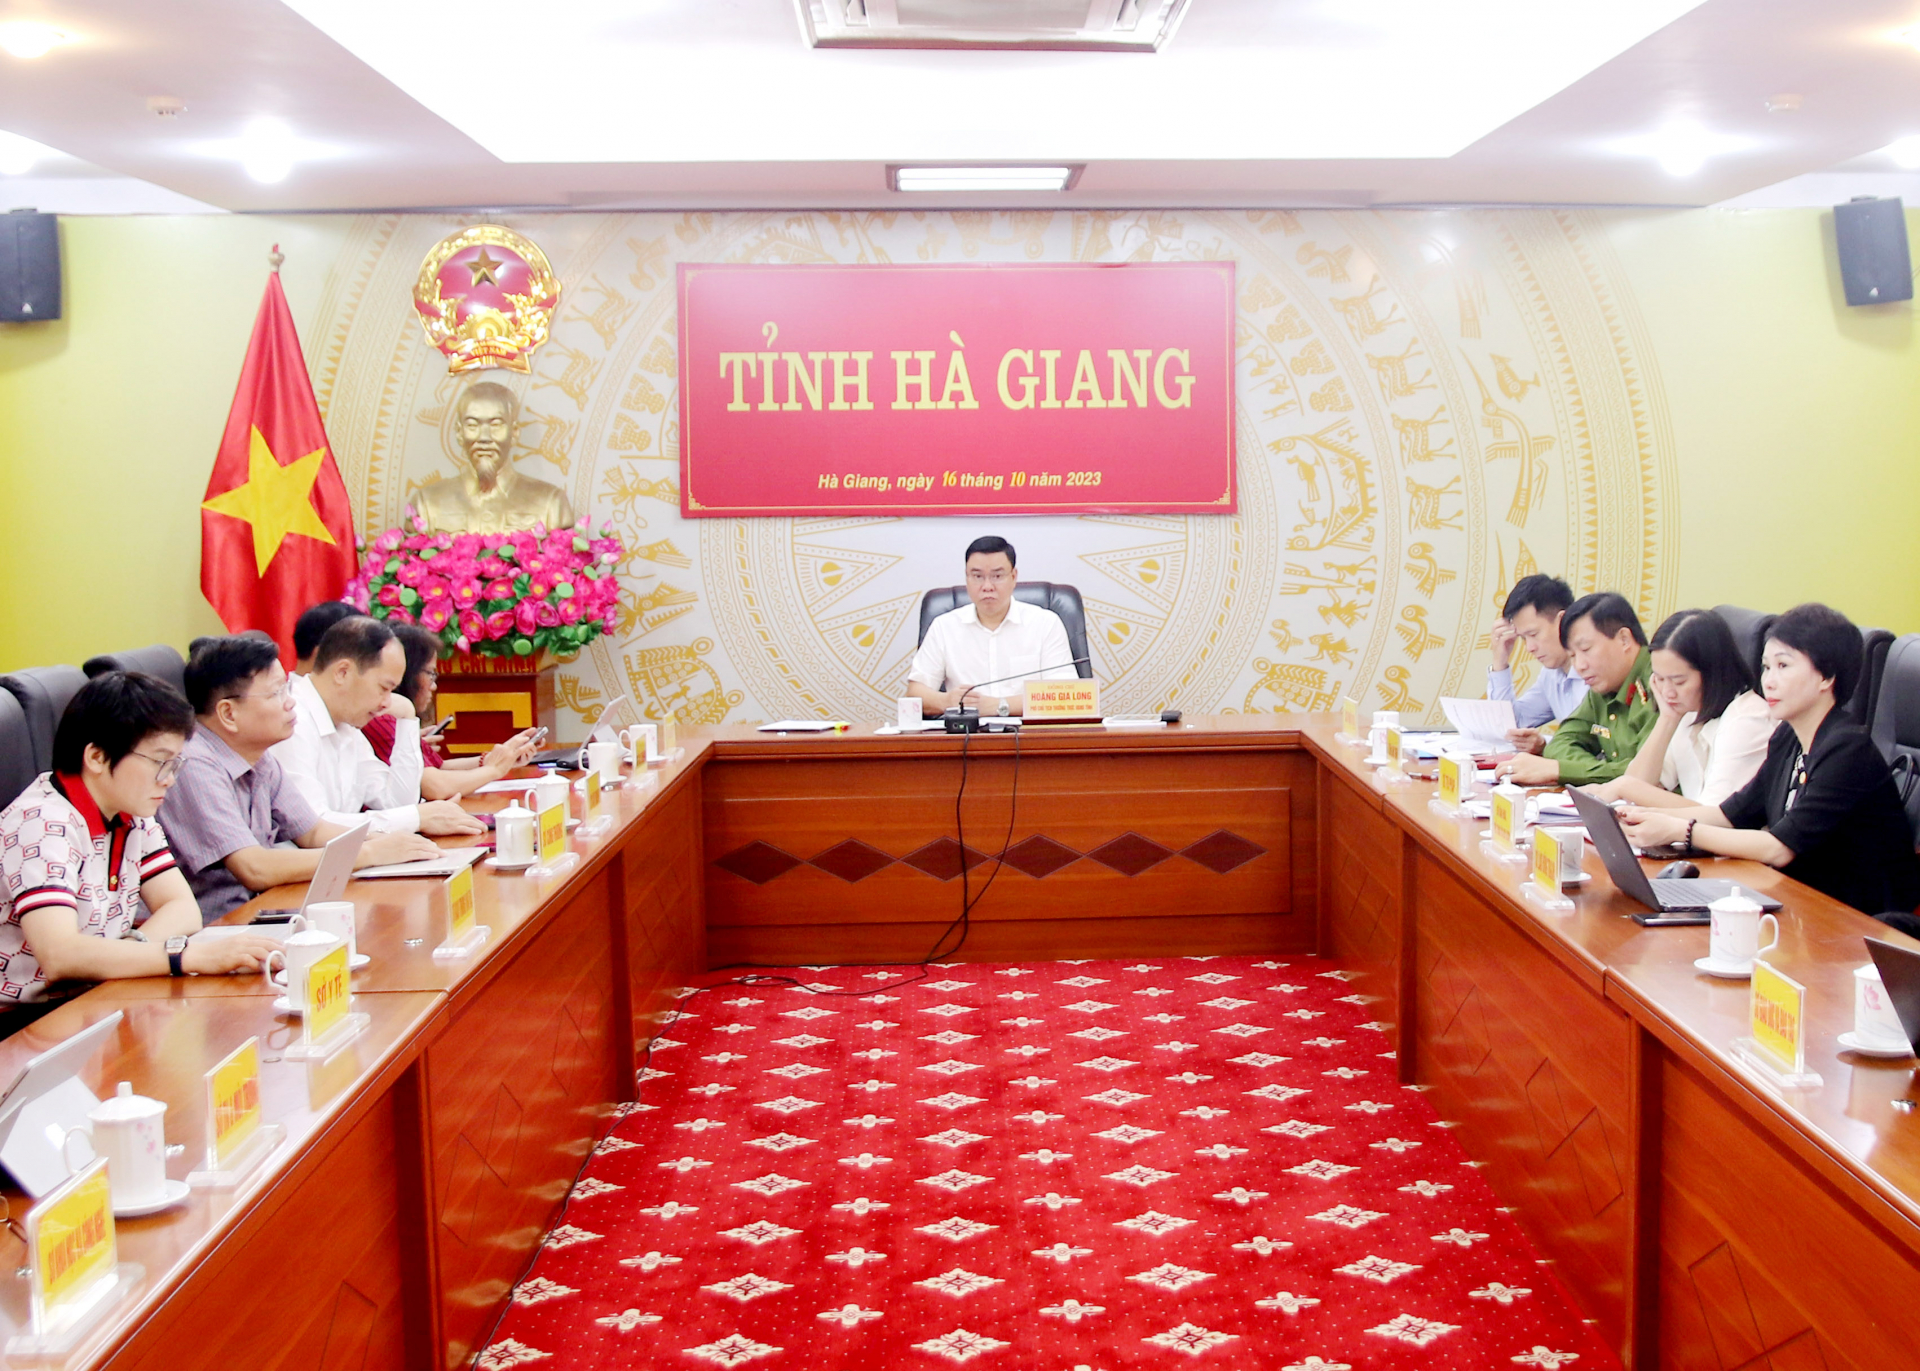 Các đại biểu dự phiên họp tại điểm cầu tỉnh Hà Giang.
